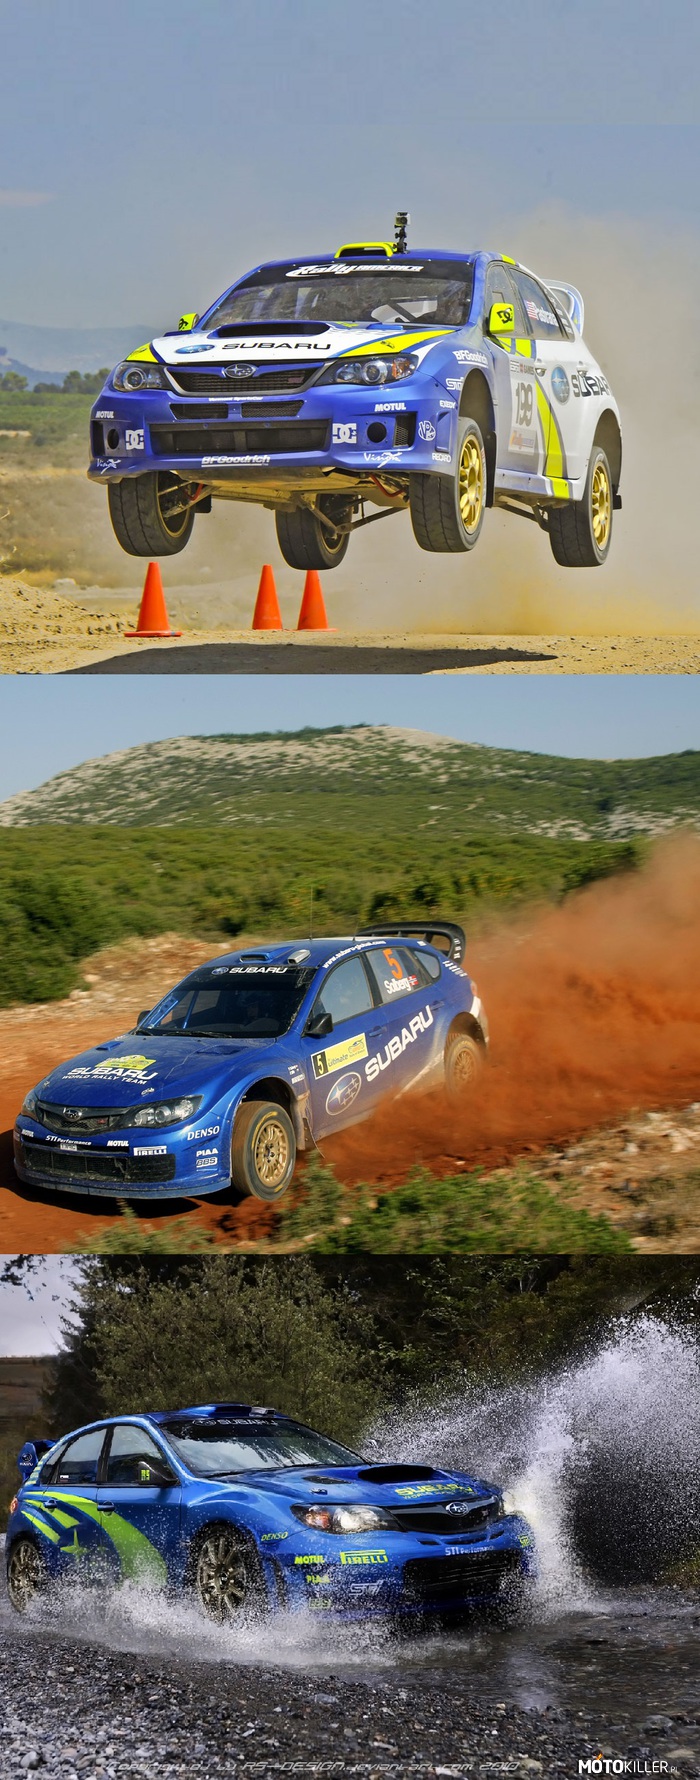 Kultowe rajdówki – Subaru Impreza

Ostatnie WRC od Subaru poszło na emeryturę razem ze starym regulaminem tej klasy.Wersja R4 oraz czasem N4 do tej pory we wprawnych rękach może zagrozić nowszym konstrukcjom w klasie RC2. 